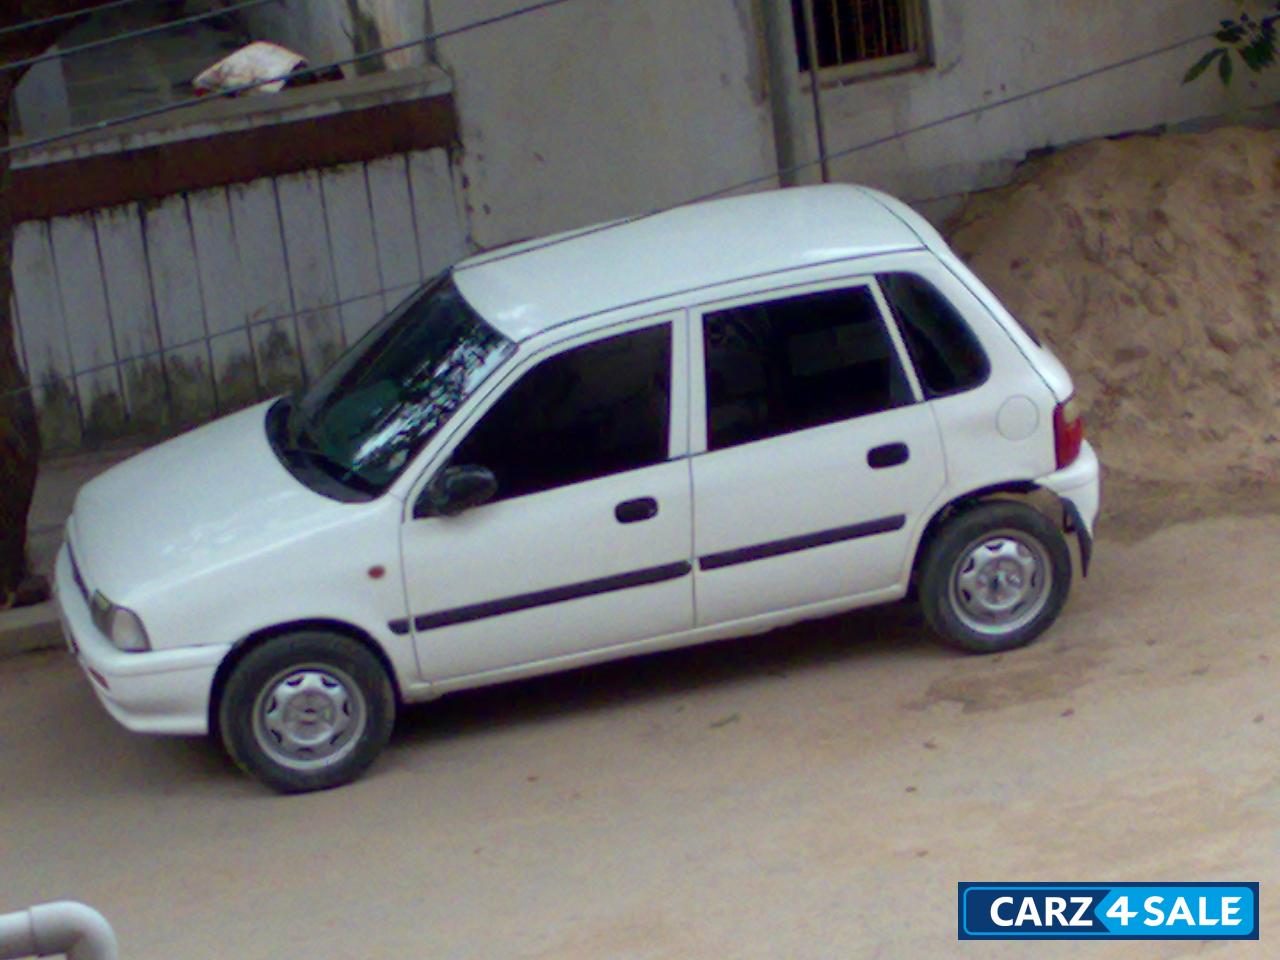 White Maruti Suzuki Zen Picture 1. Car ID 2528. Car located in ...